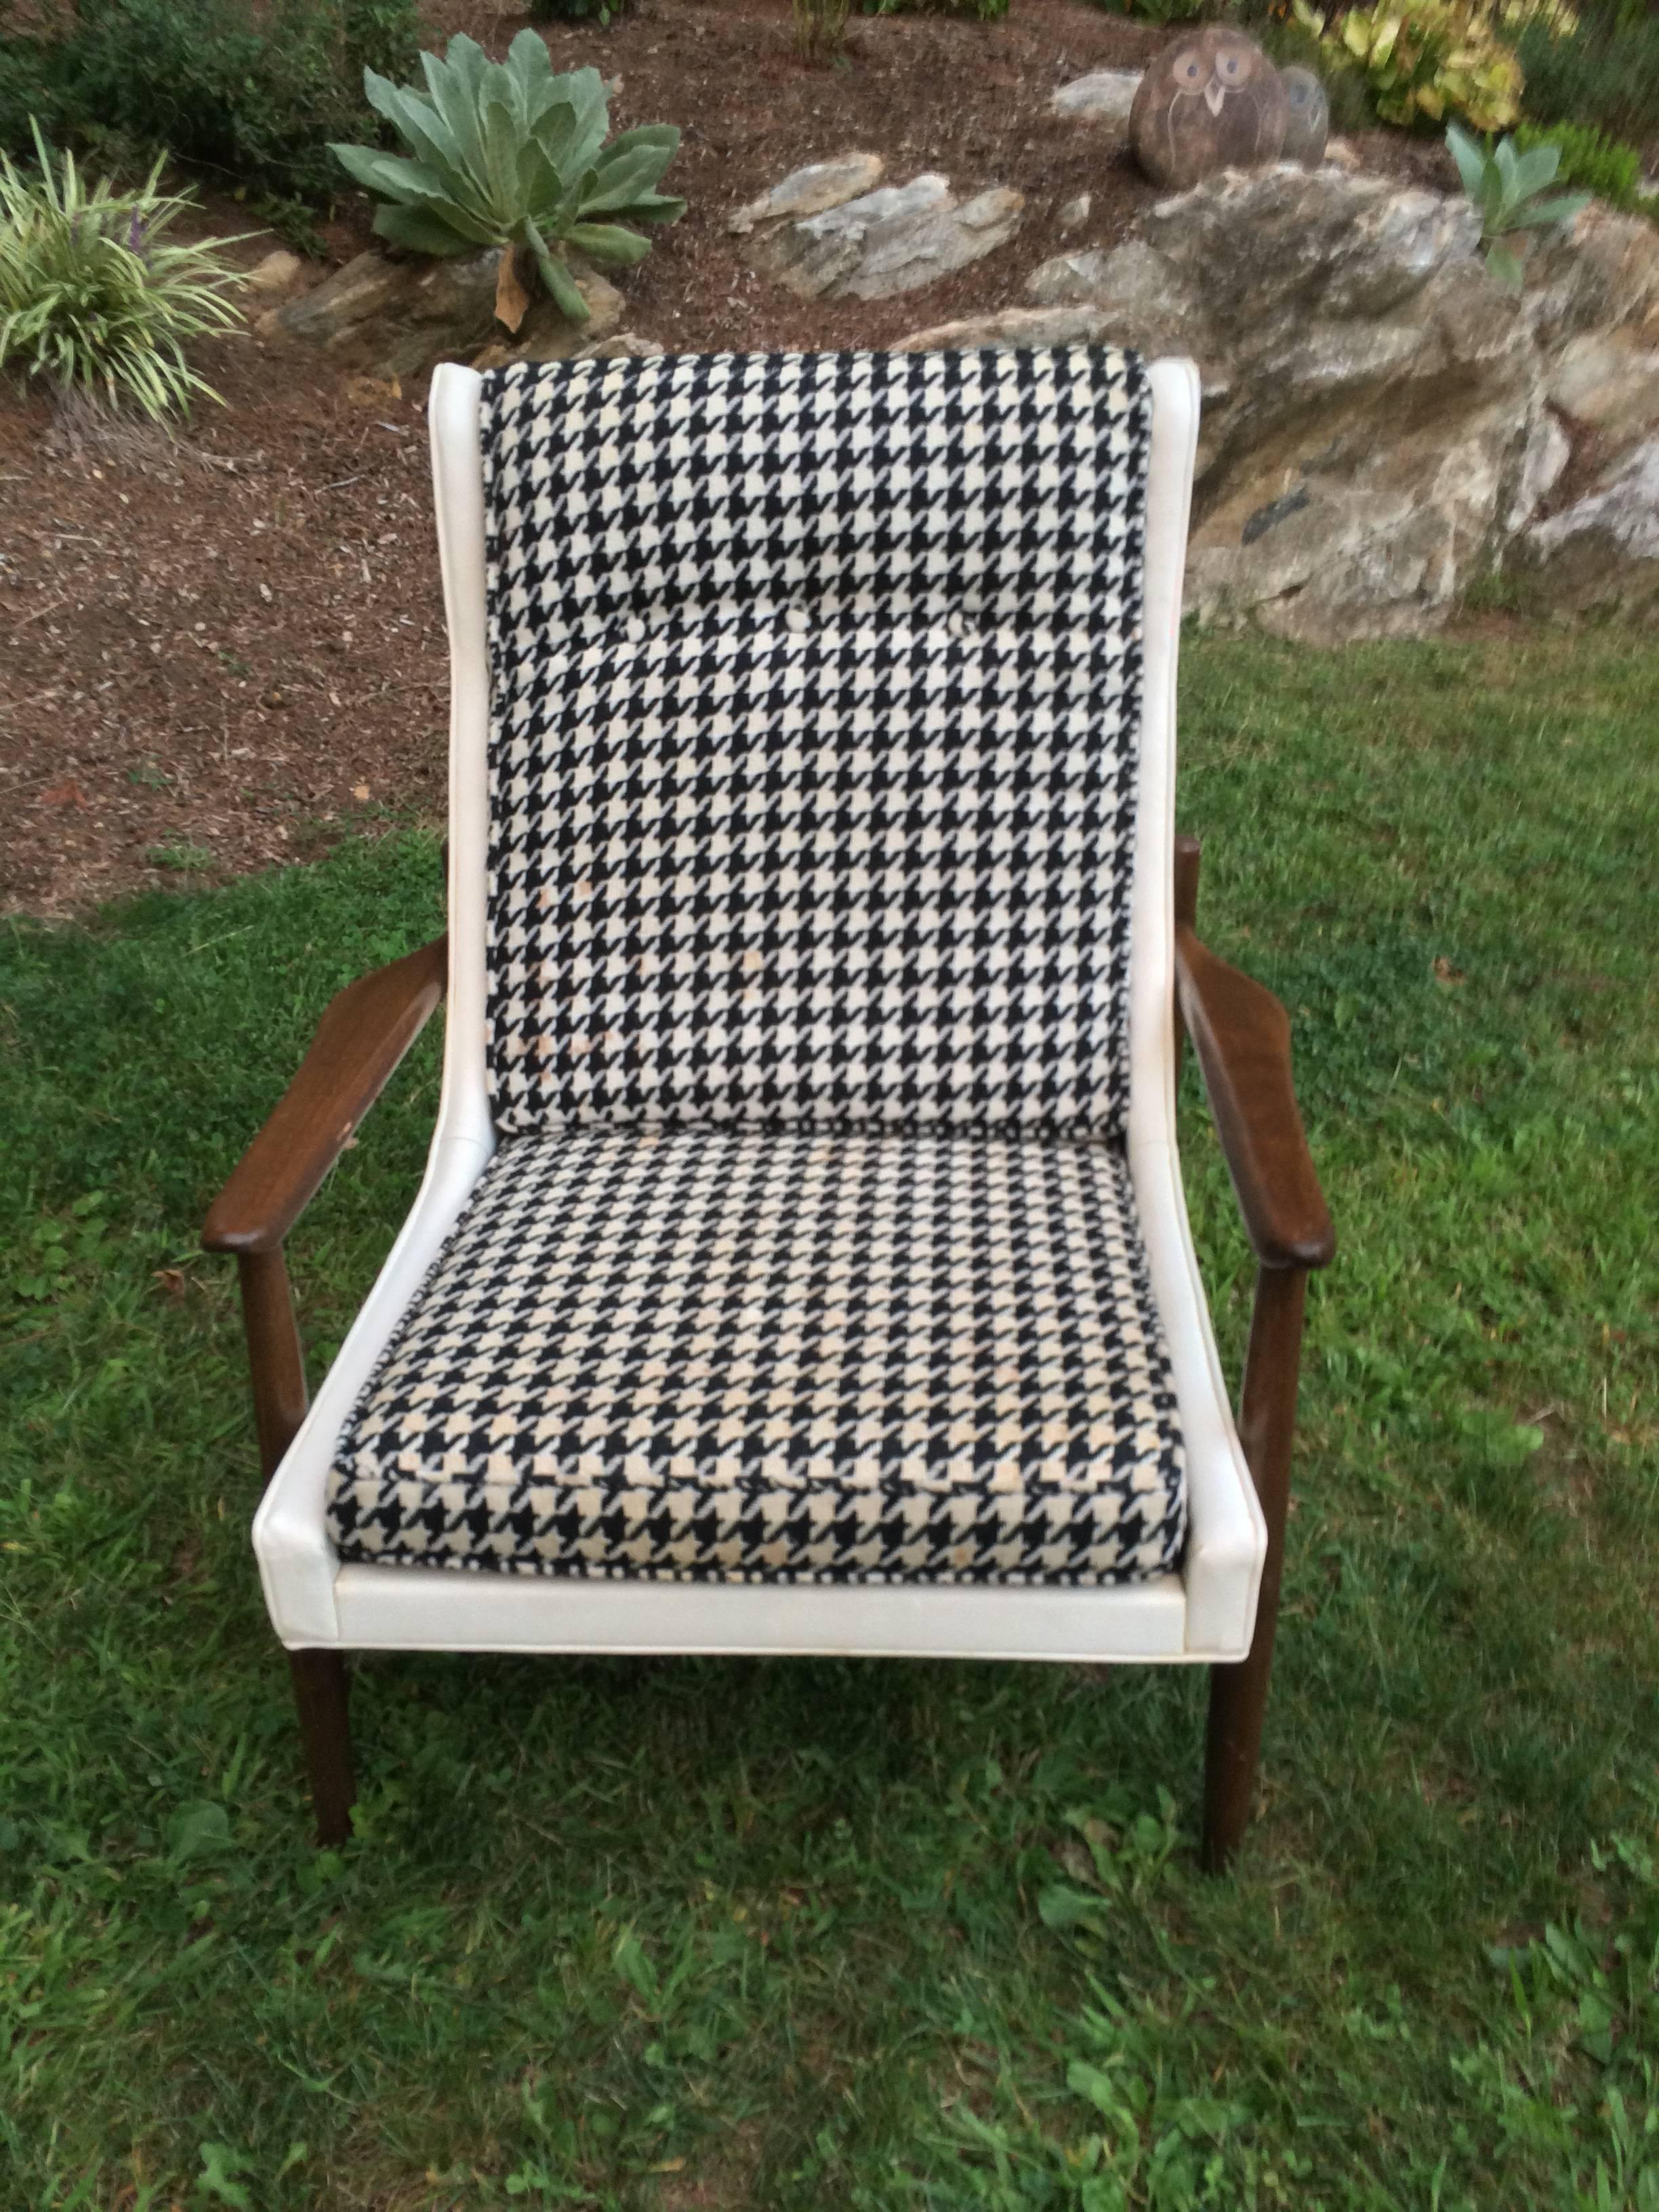 Unknown Mid-Century Modern Walnut Lounge Chair